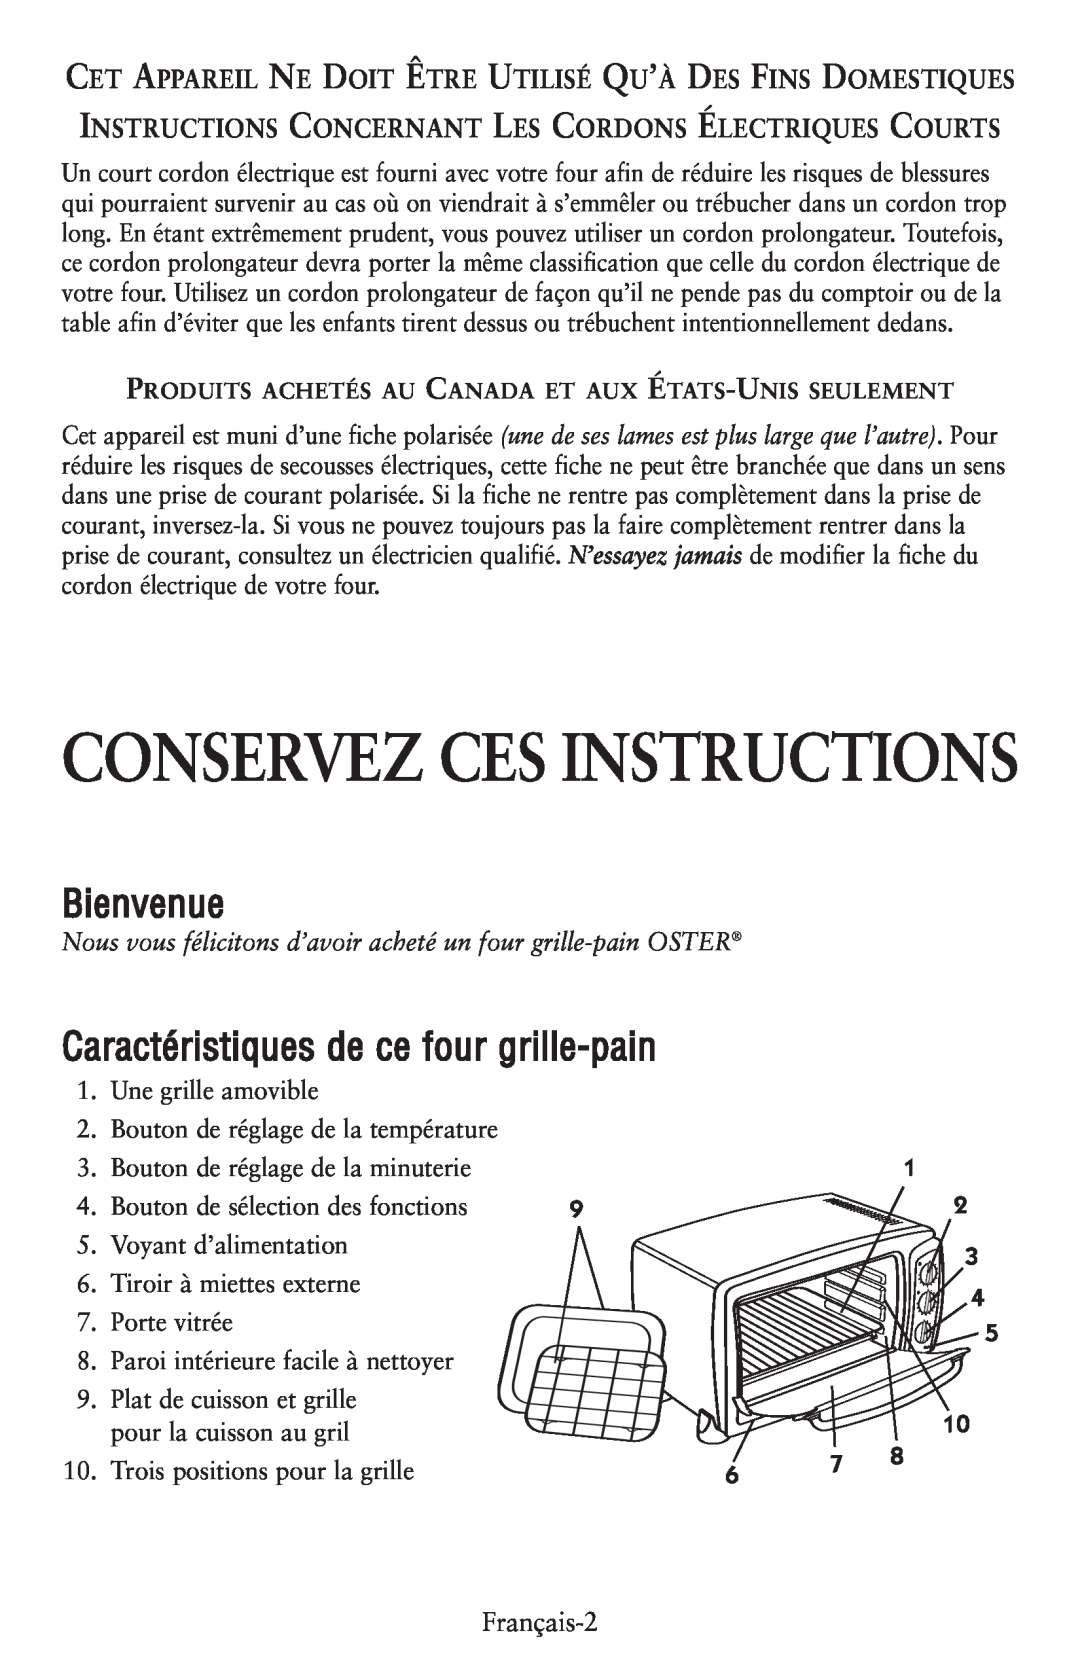 Oster 119308, 6056 user manual Conservez Ces Instructions, Bienvenue, Caractéristiques de ce four grille-pain 